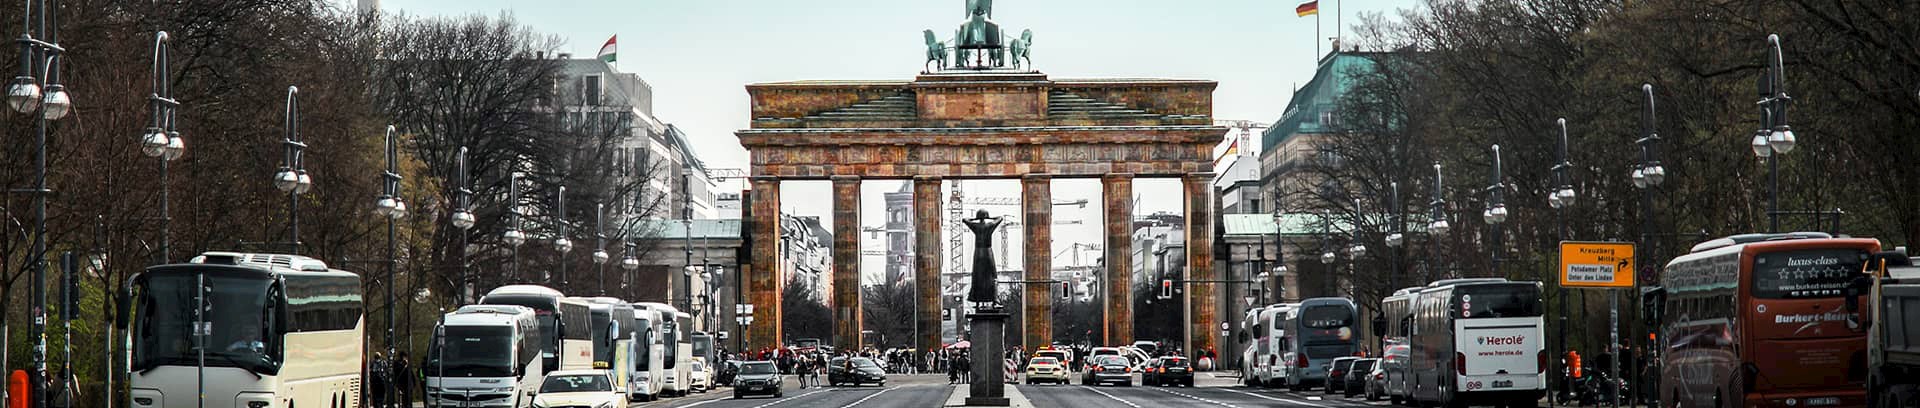 Brandenburger Tor i Berlin, tysk sprogkursus i FOF Aarhus